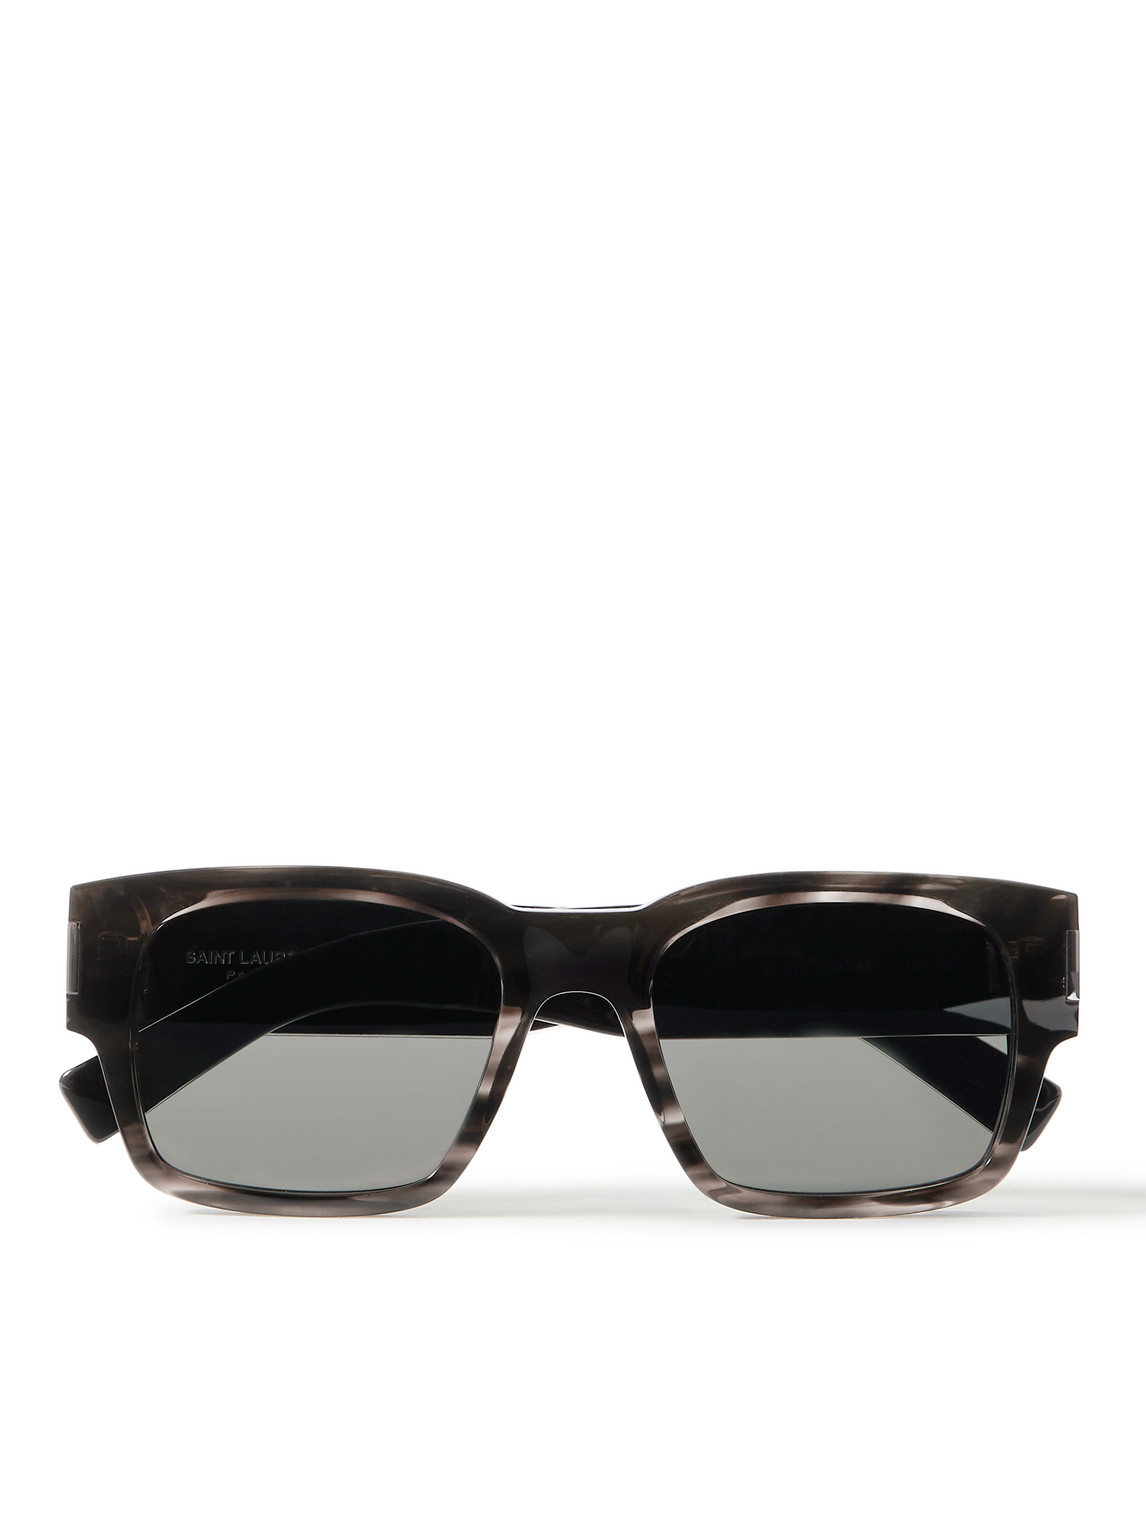 Saint Laurent Square-frame Tortoiseshell Acetate Sunglasses In Gray